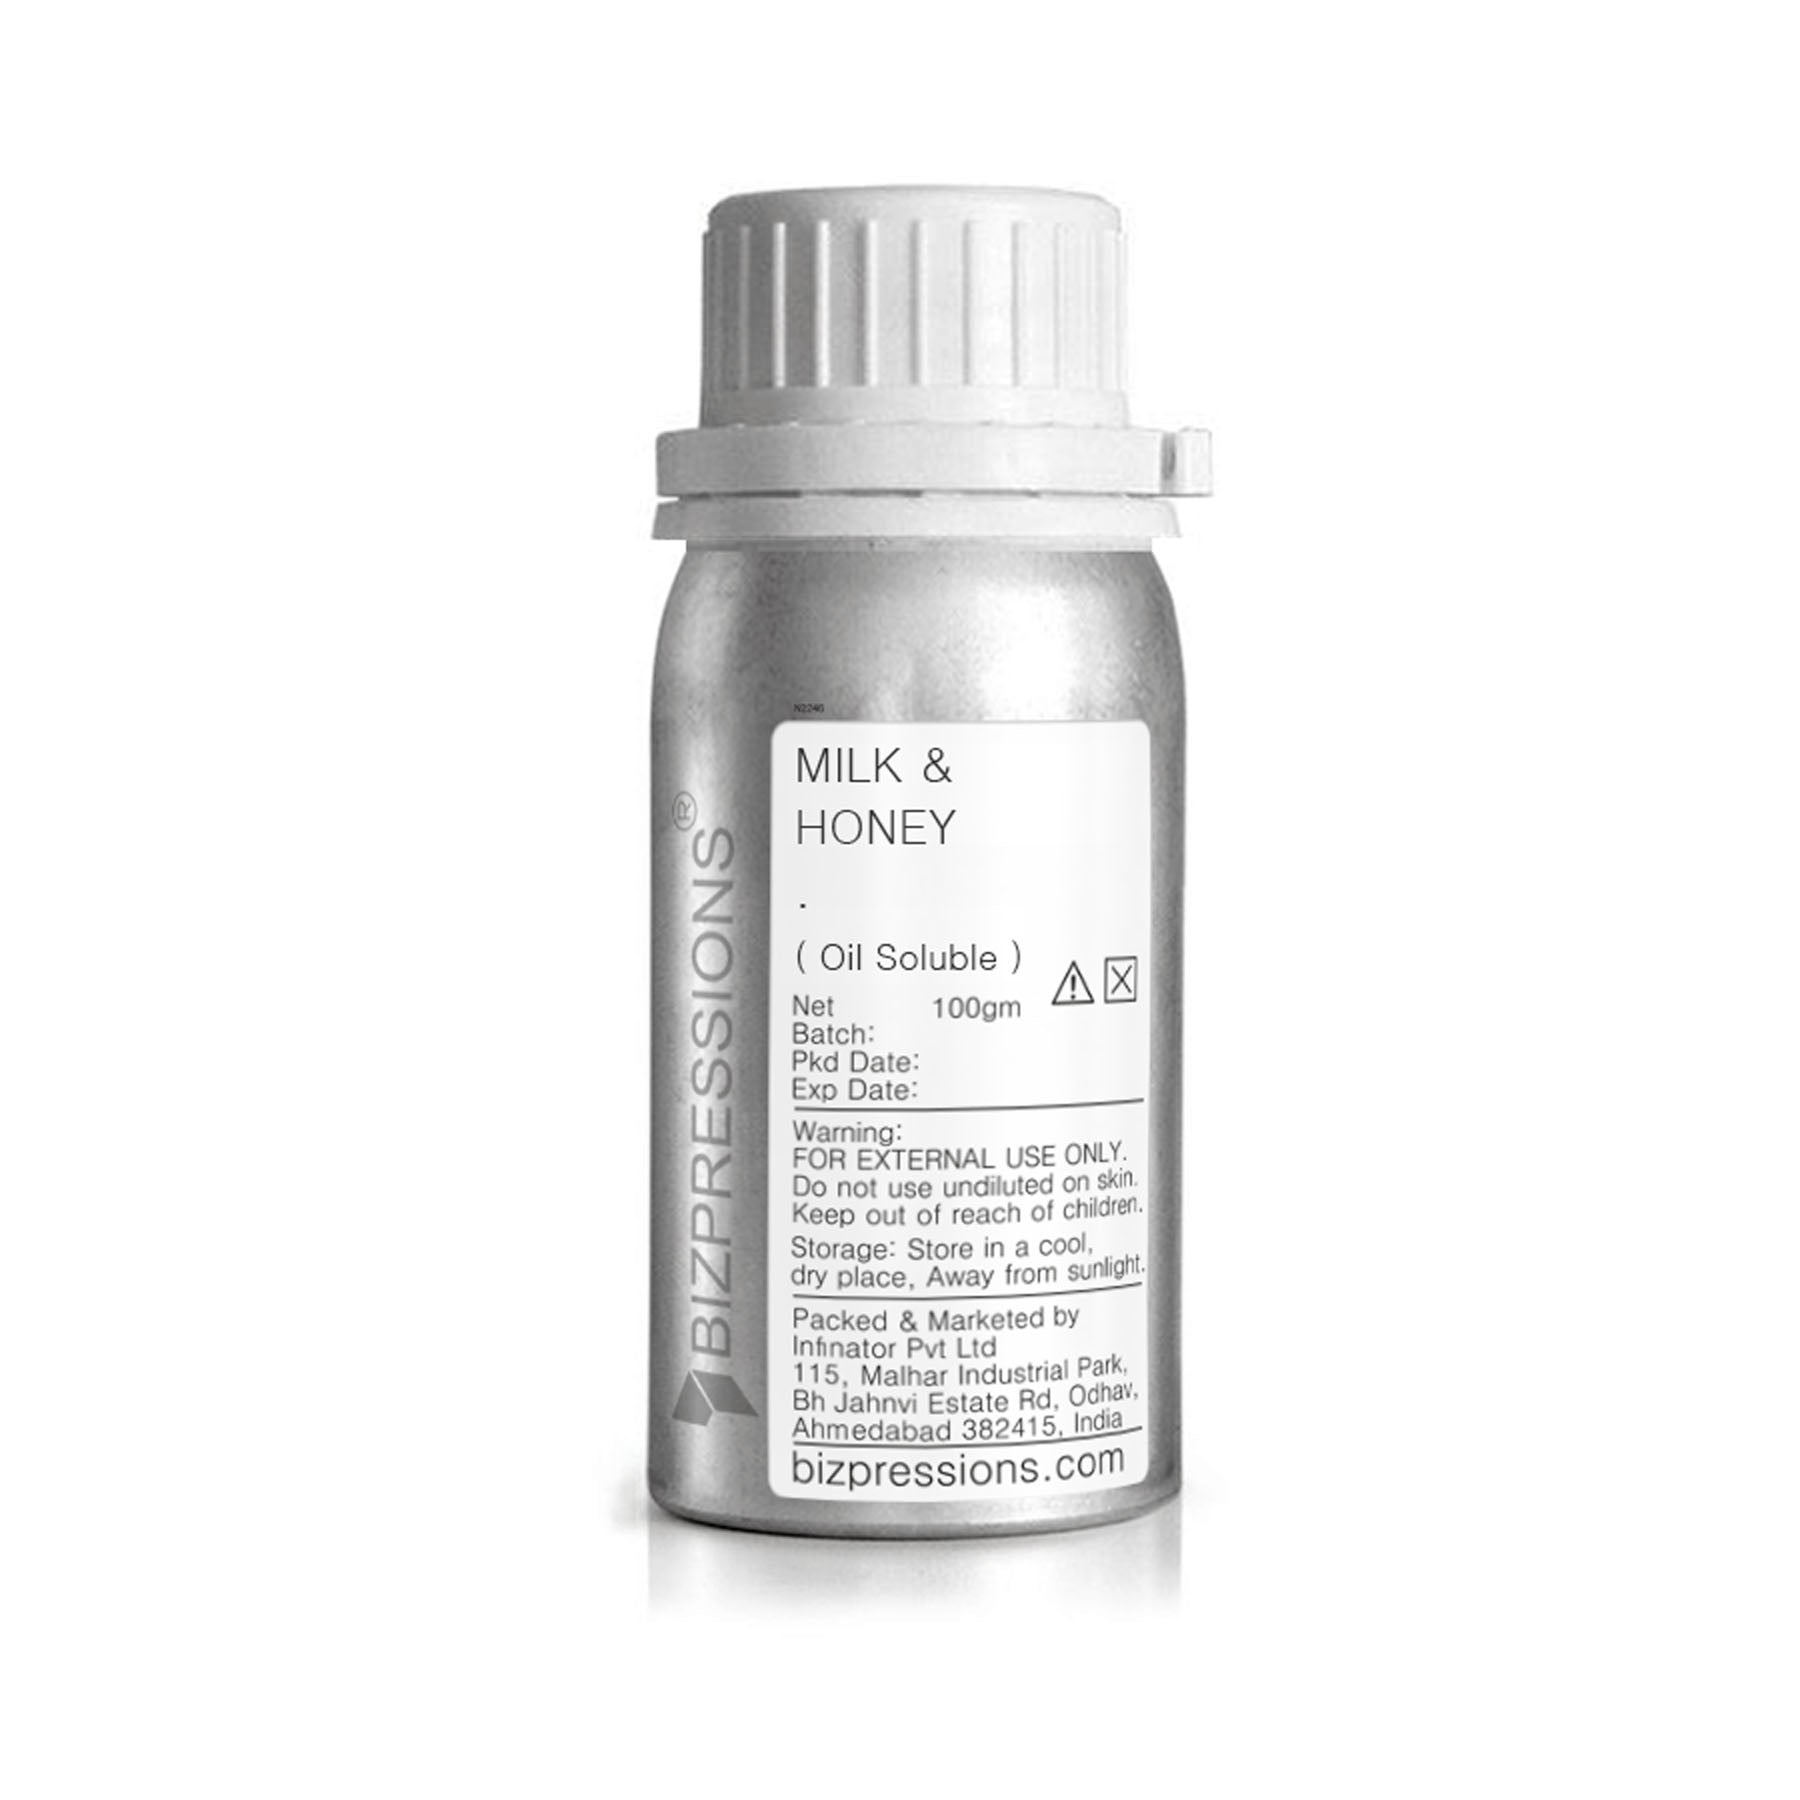 MILK & HONEY - Fragrance ( Oil Soluble ) - 100 gm